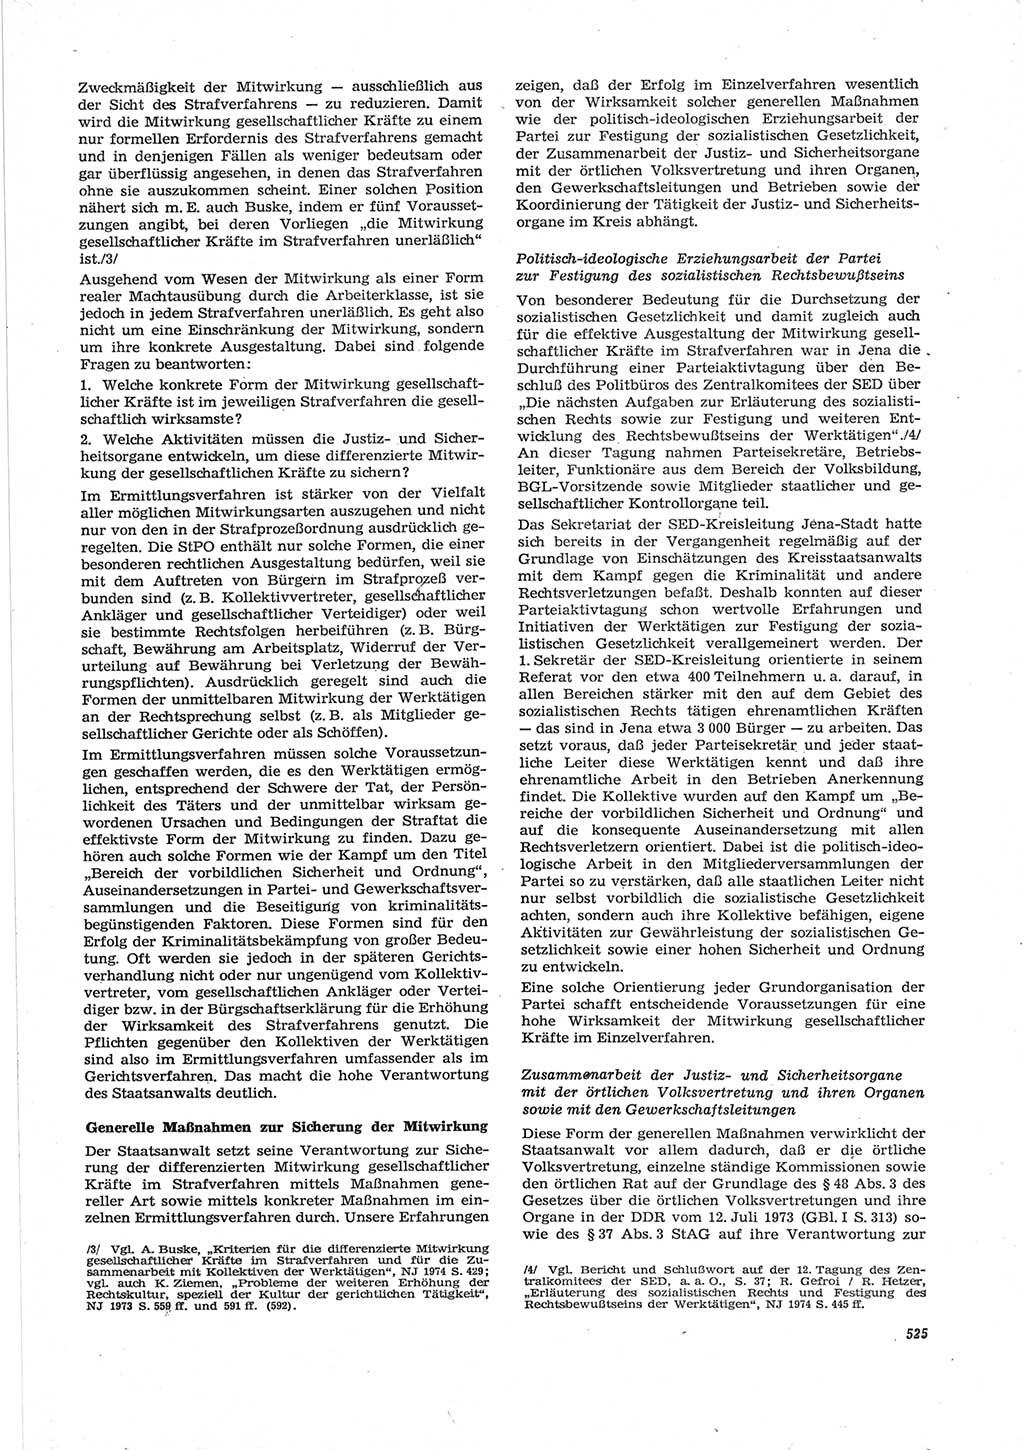 Neue Justiz (NJ), Zeitschrift für Recht und Rechtswissenschaft [Deutsche Demokratische Republik (DDR)], 28. Jahrgang 1974, Seite 525 (NJ DDR 1974, S. 525)